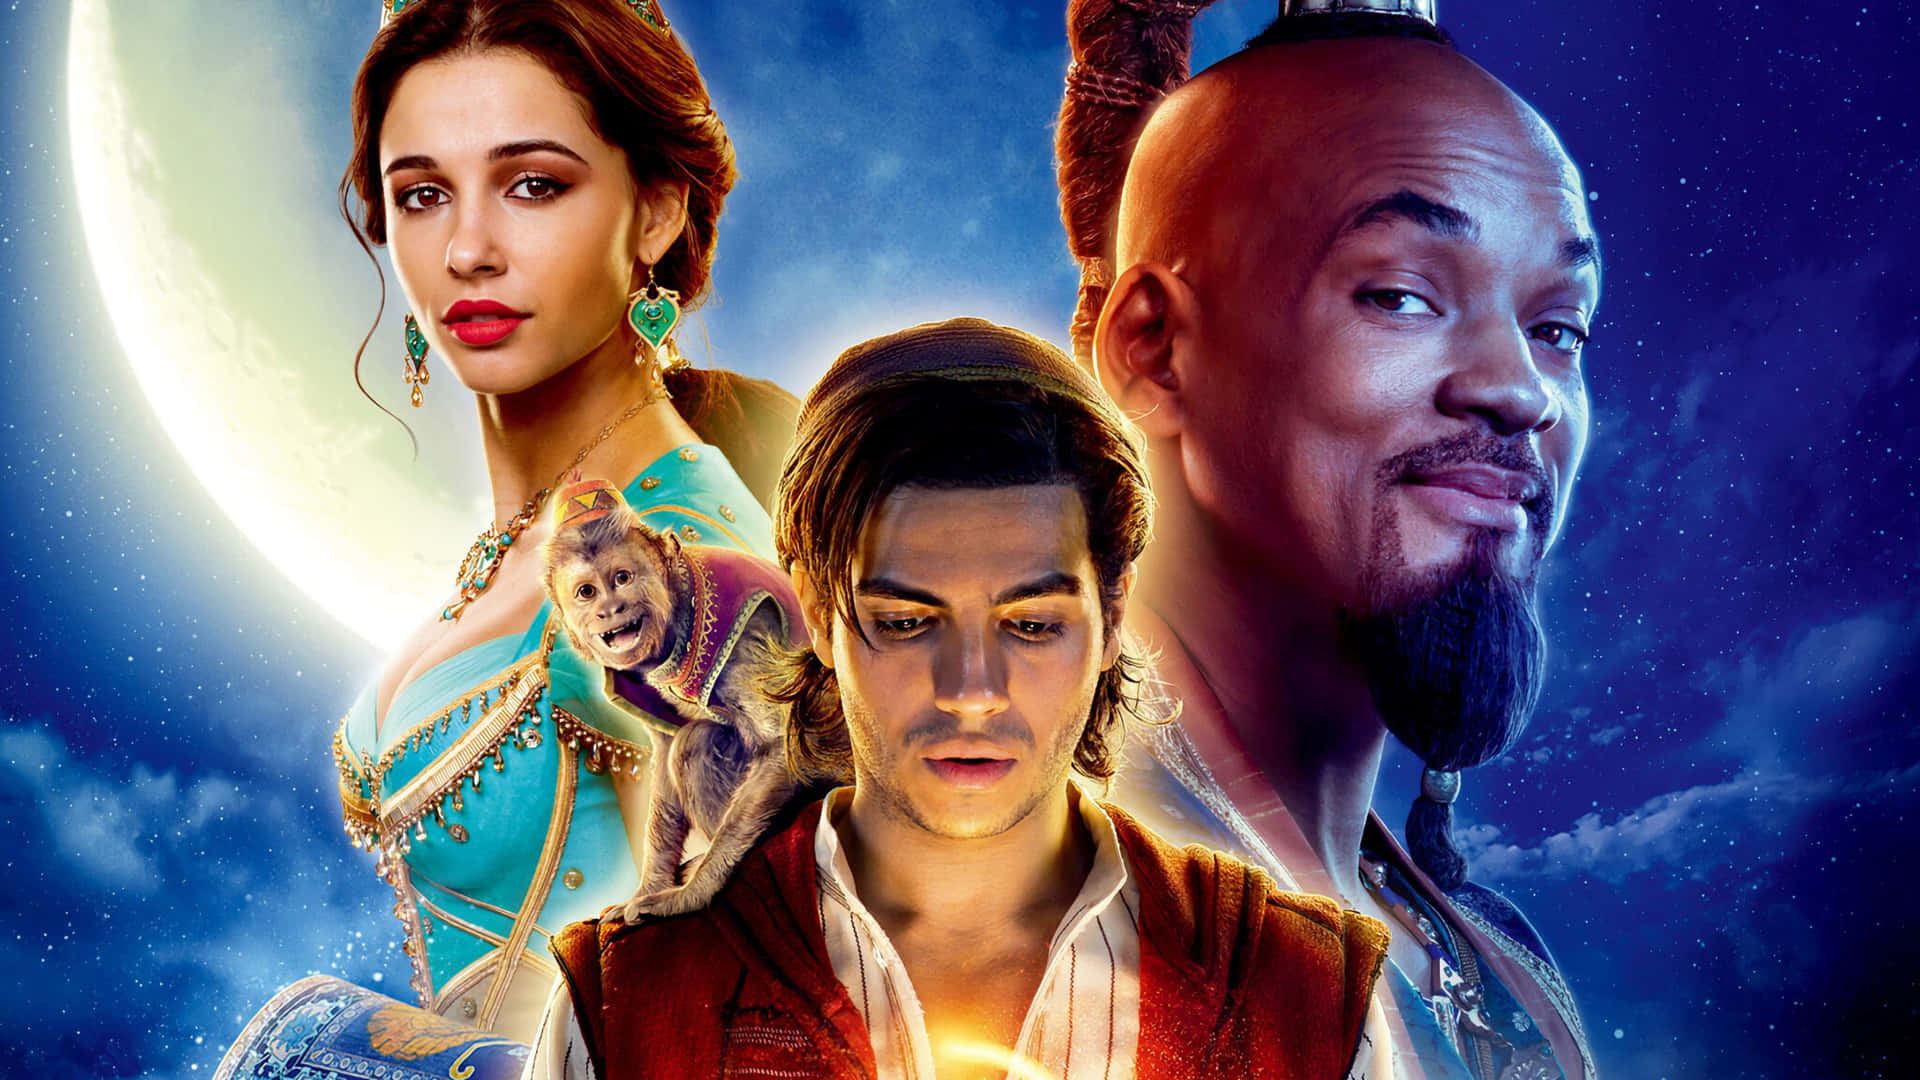 Mirakuløs Flugt - Aladdin undviger vagterne under sit modige eventyr i Agrabah